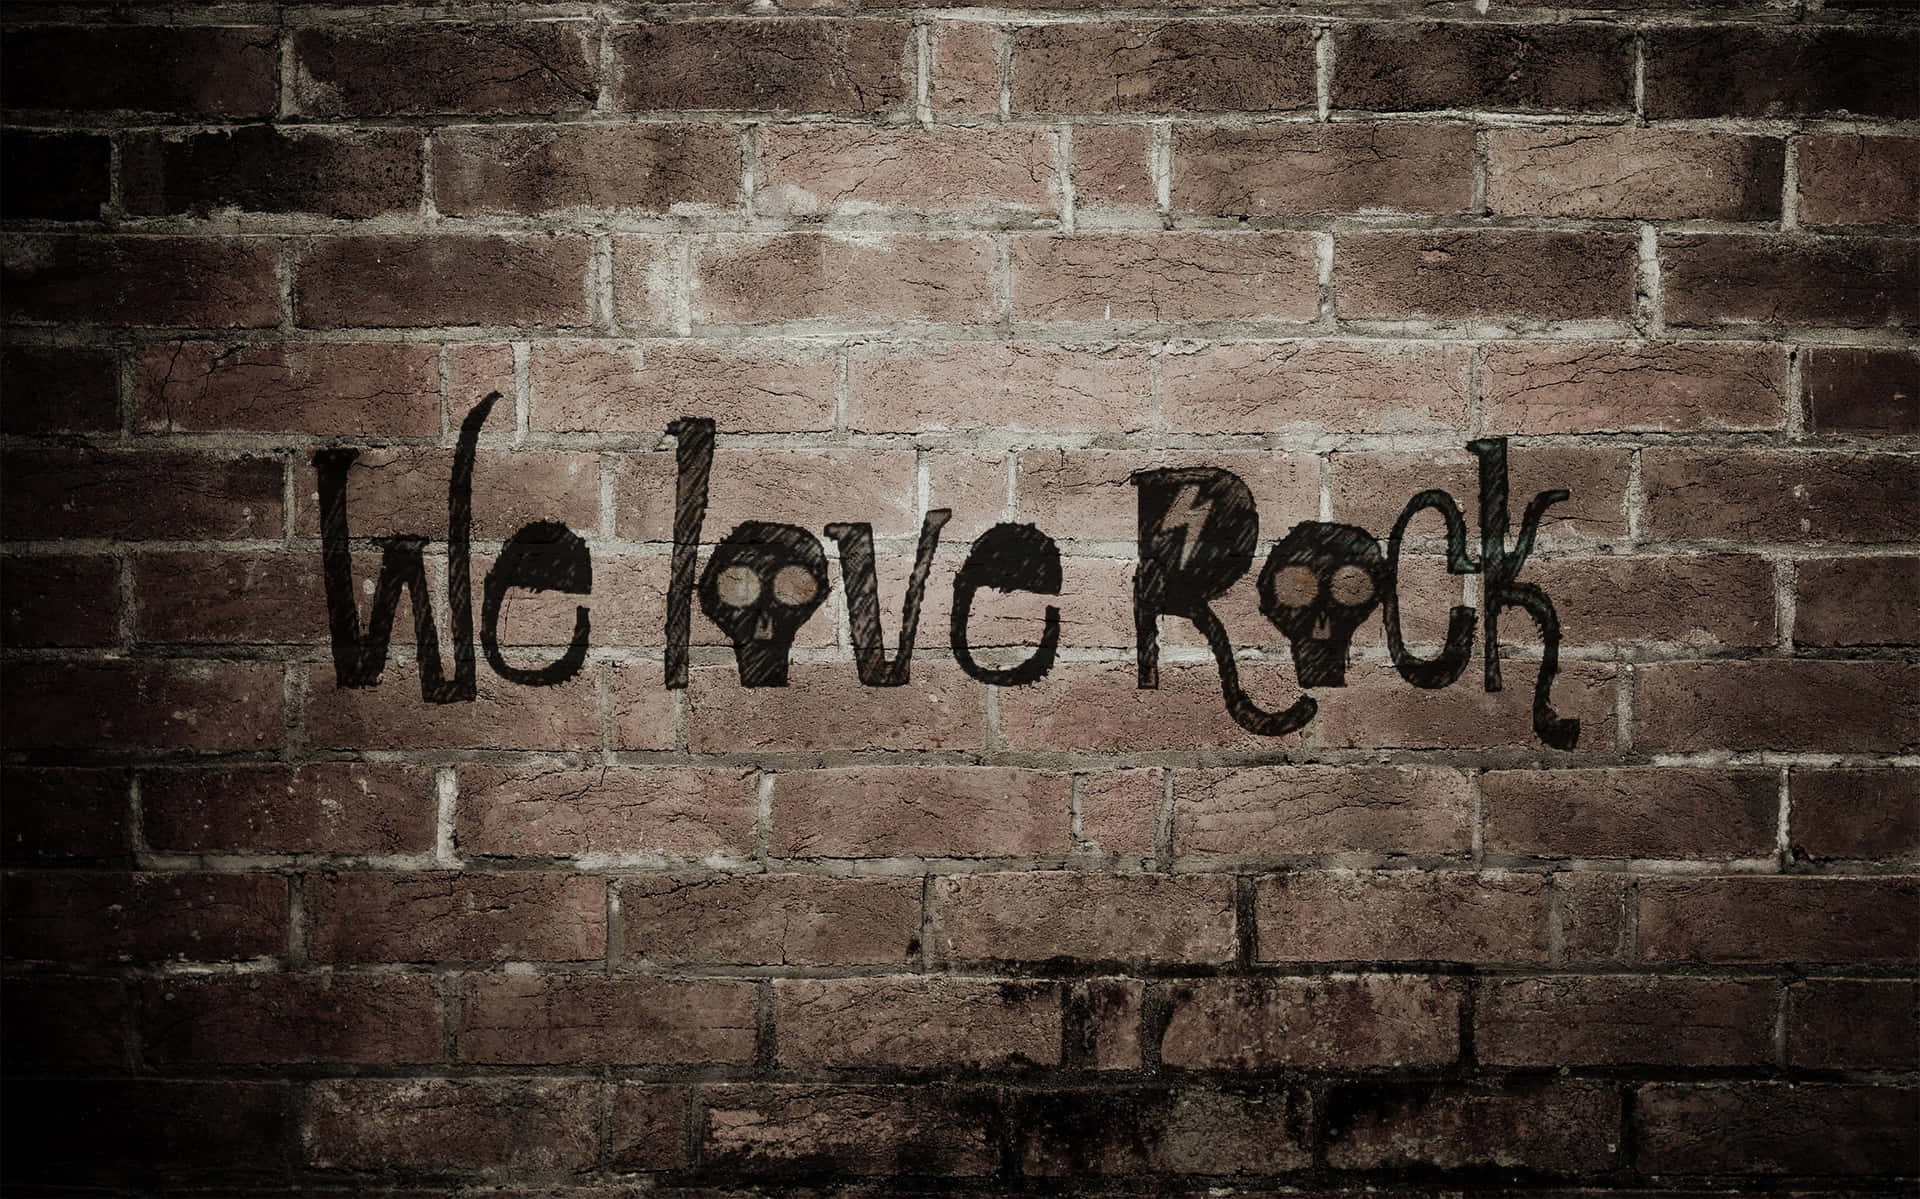 Ljudetav Rock Och Roll